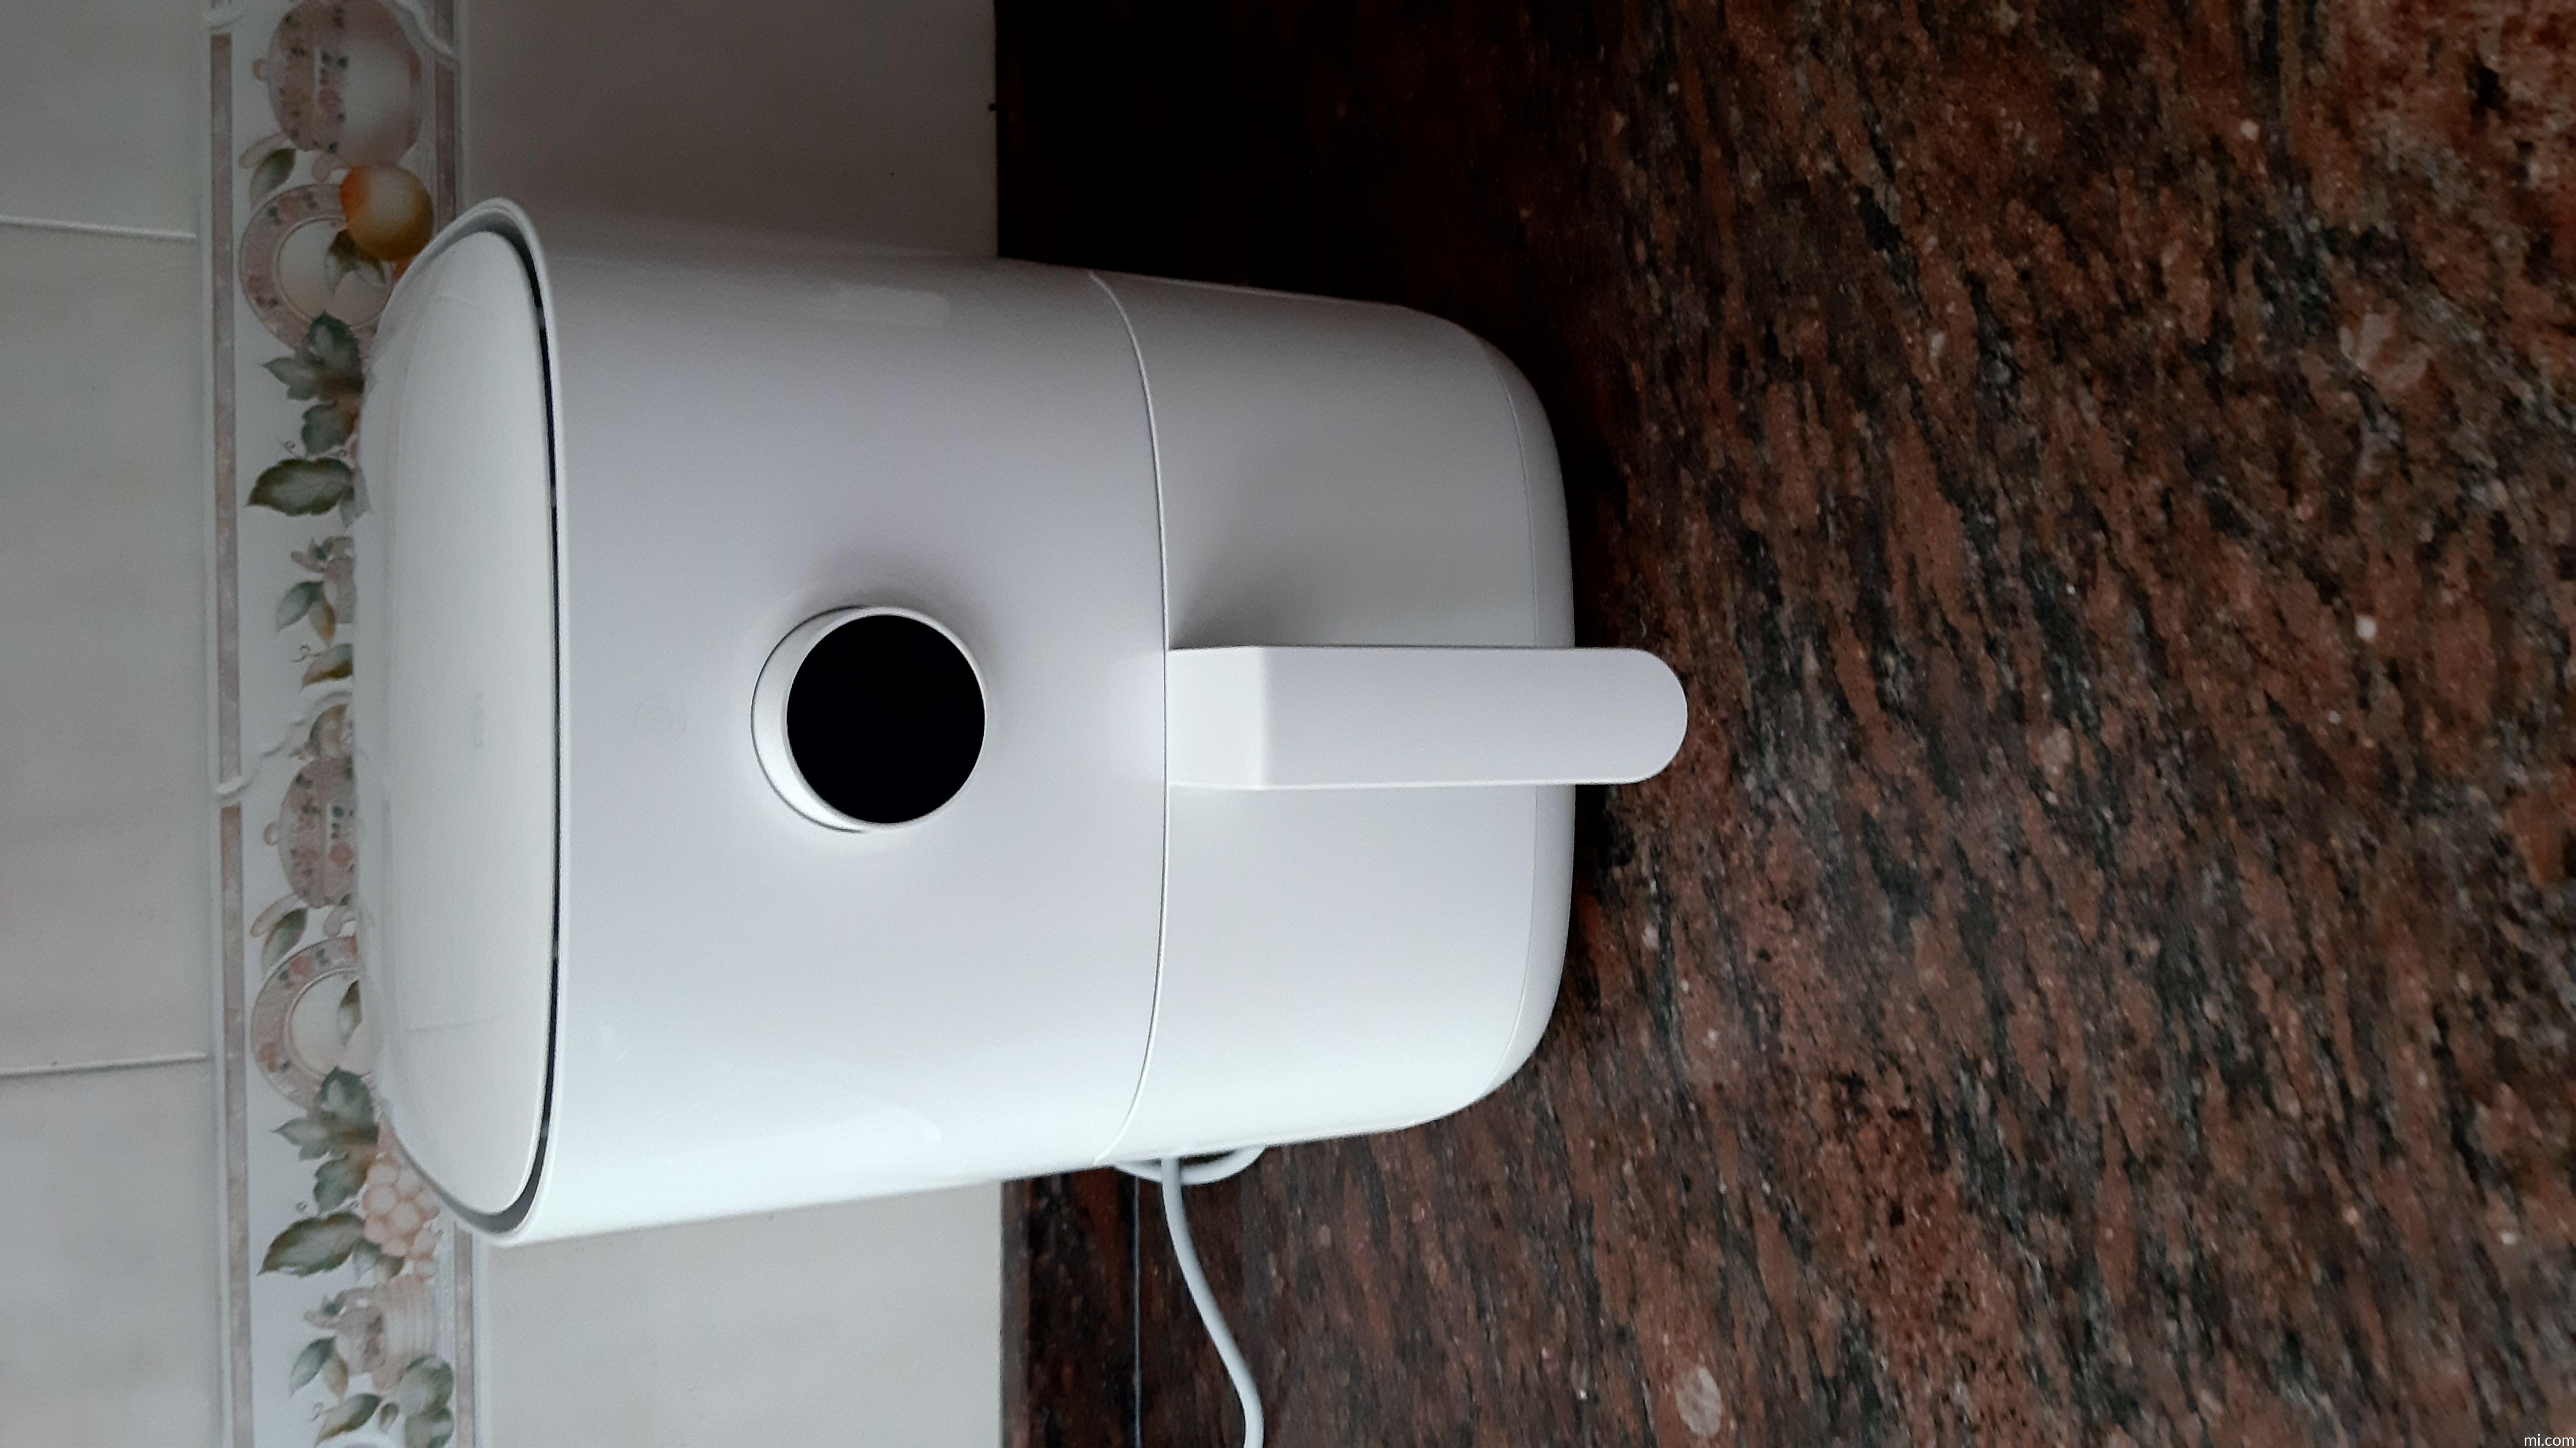 Xiaomi Mijia Smart Air Fryer - Freidora Sin Aceite, Capacidad 3.5 L,  regulable 40-200, Apagado automático, con Recetas, Pantalla OLED, 1500W,  Asistente de voz Google y Alexa integrado. (Color Blanco) : 